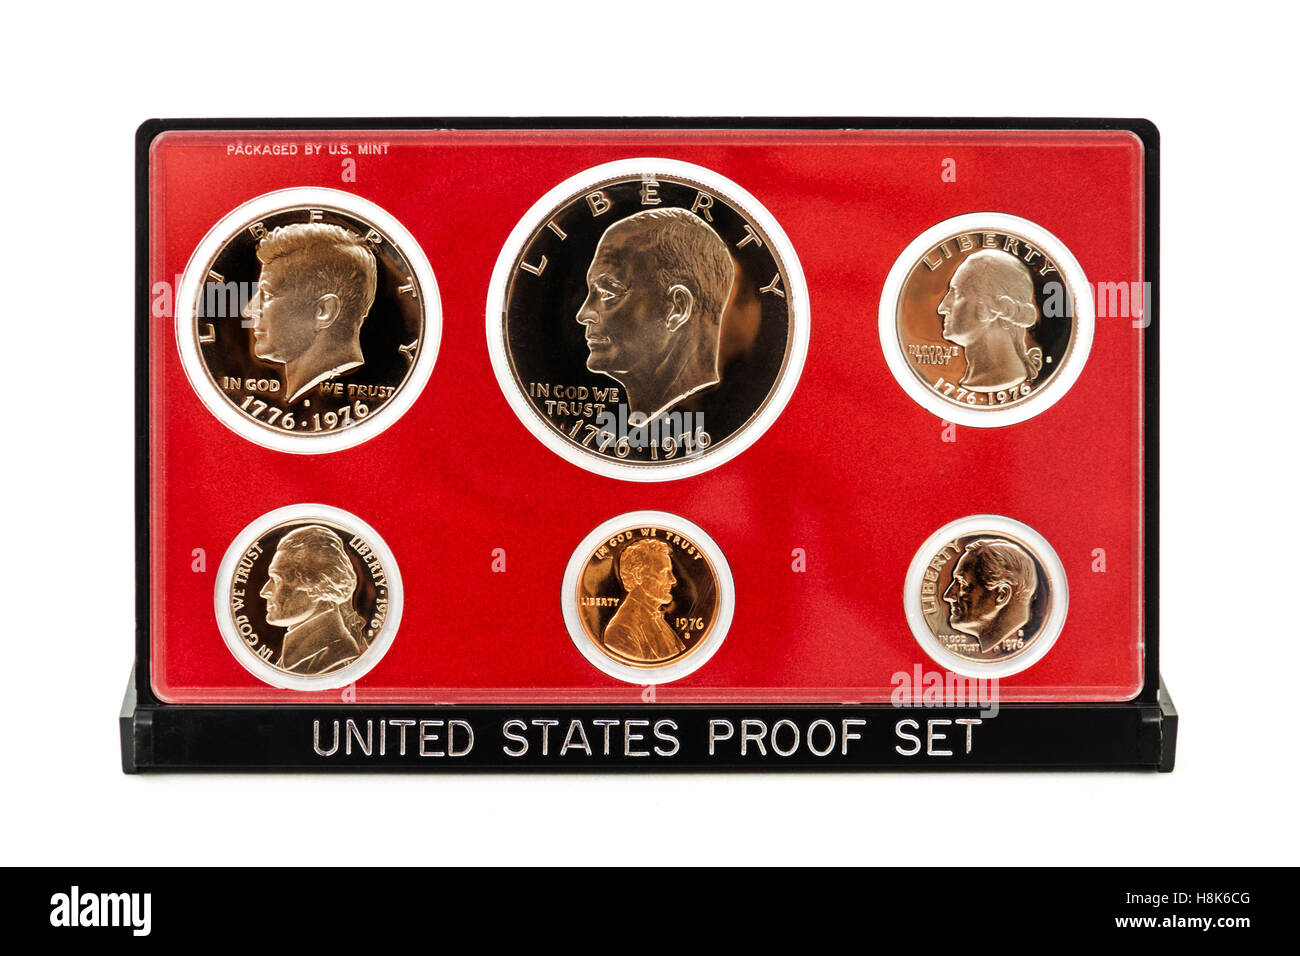 1976 Vereinigte Staaten Bicentennial Beweis gesetzt. Jedes Set enthält sechs Münzen: ein Beispiel für den Lincoln Cent, Jefferson Nickel, Stockfoto